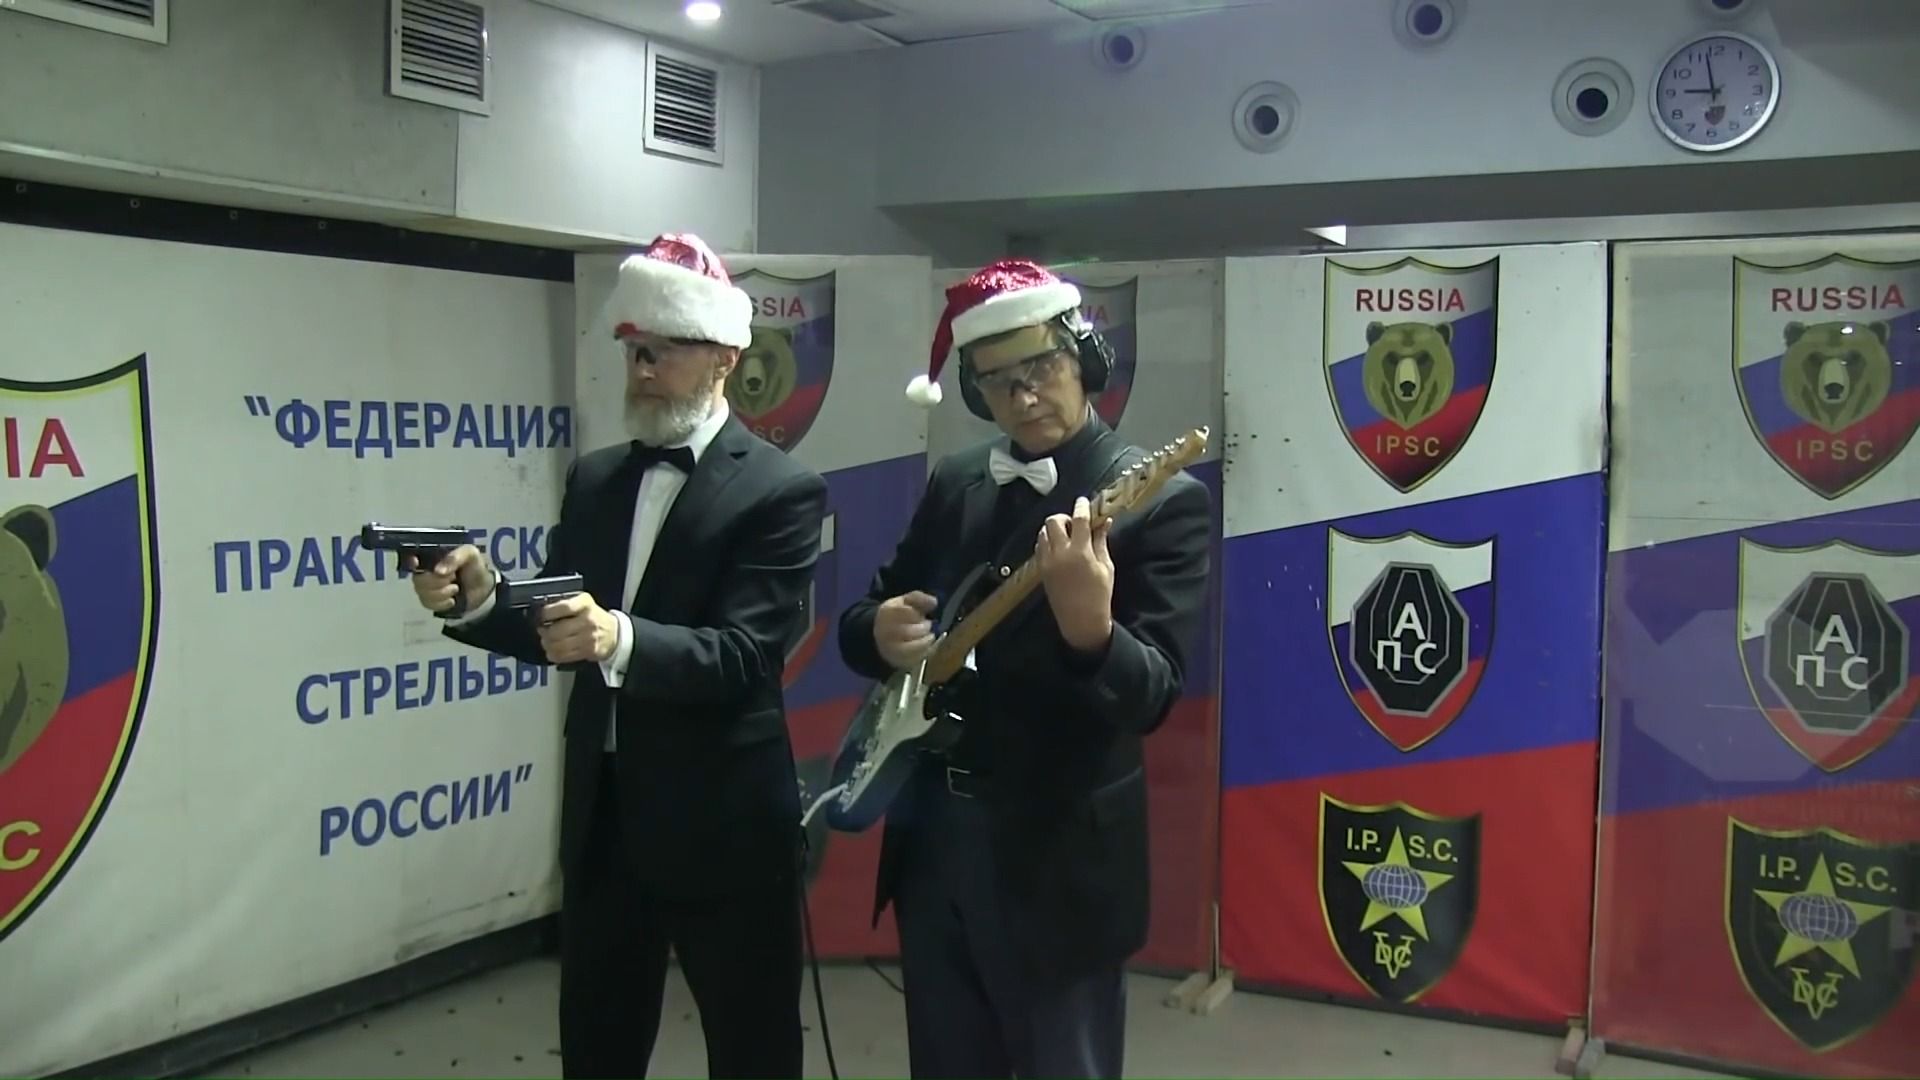 俄罗斯射击协会主席用手枪演奏ёлочка圣诞树 铃儿响叮当及мурка